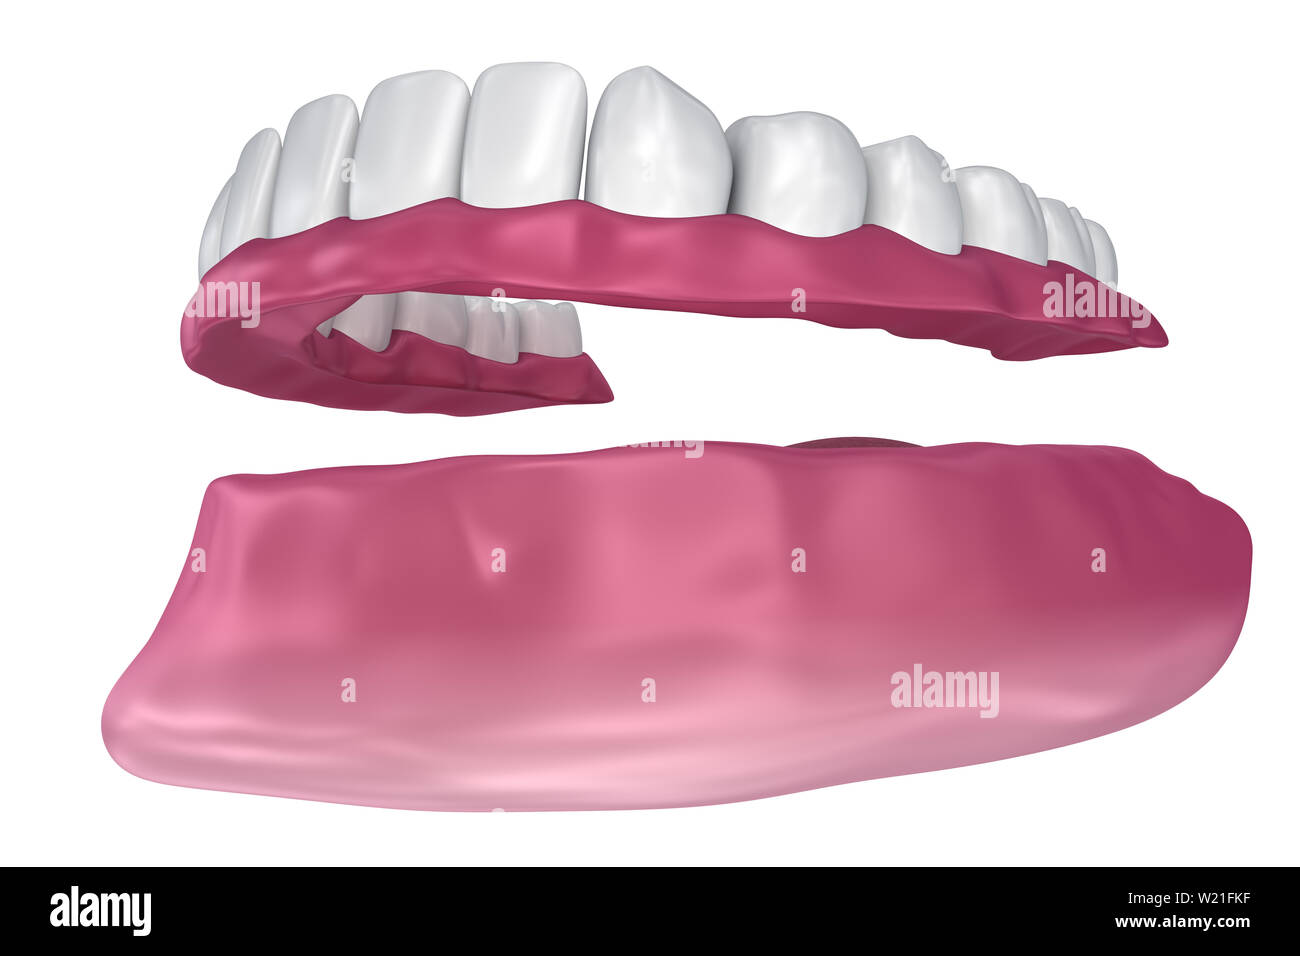 Toutes les dents manquantes - Prothèse complète amovible. 3D illustration Banque D'Images